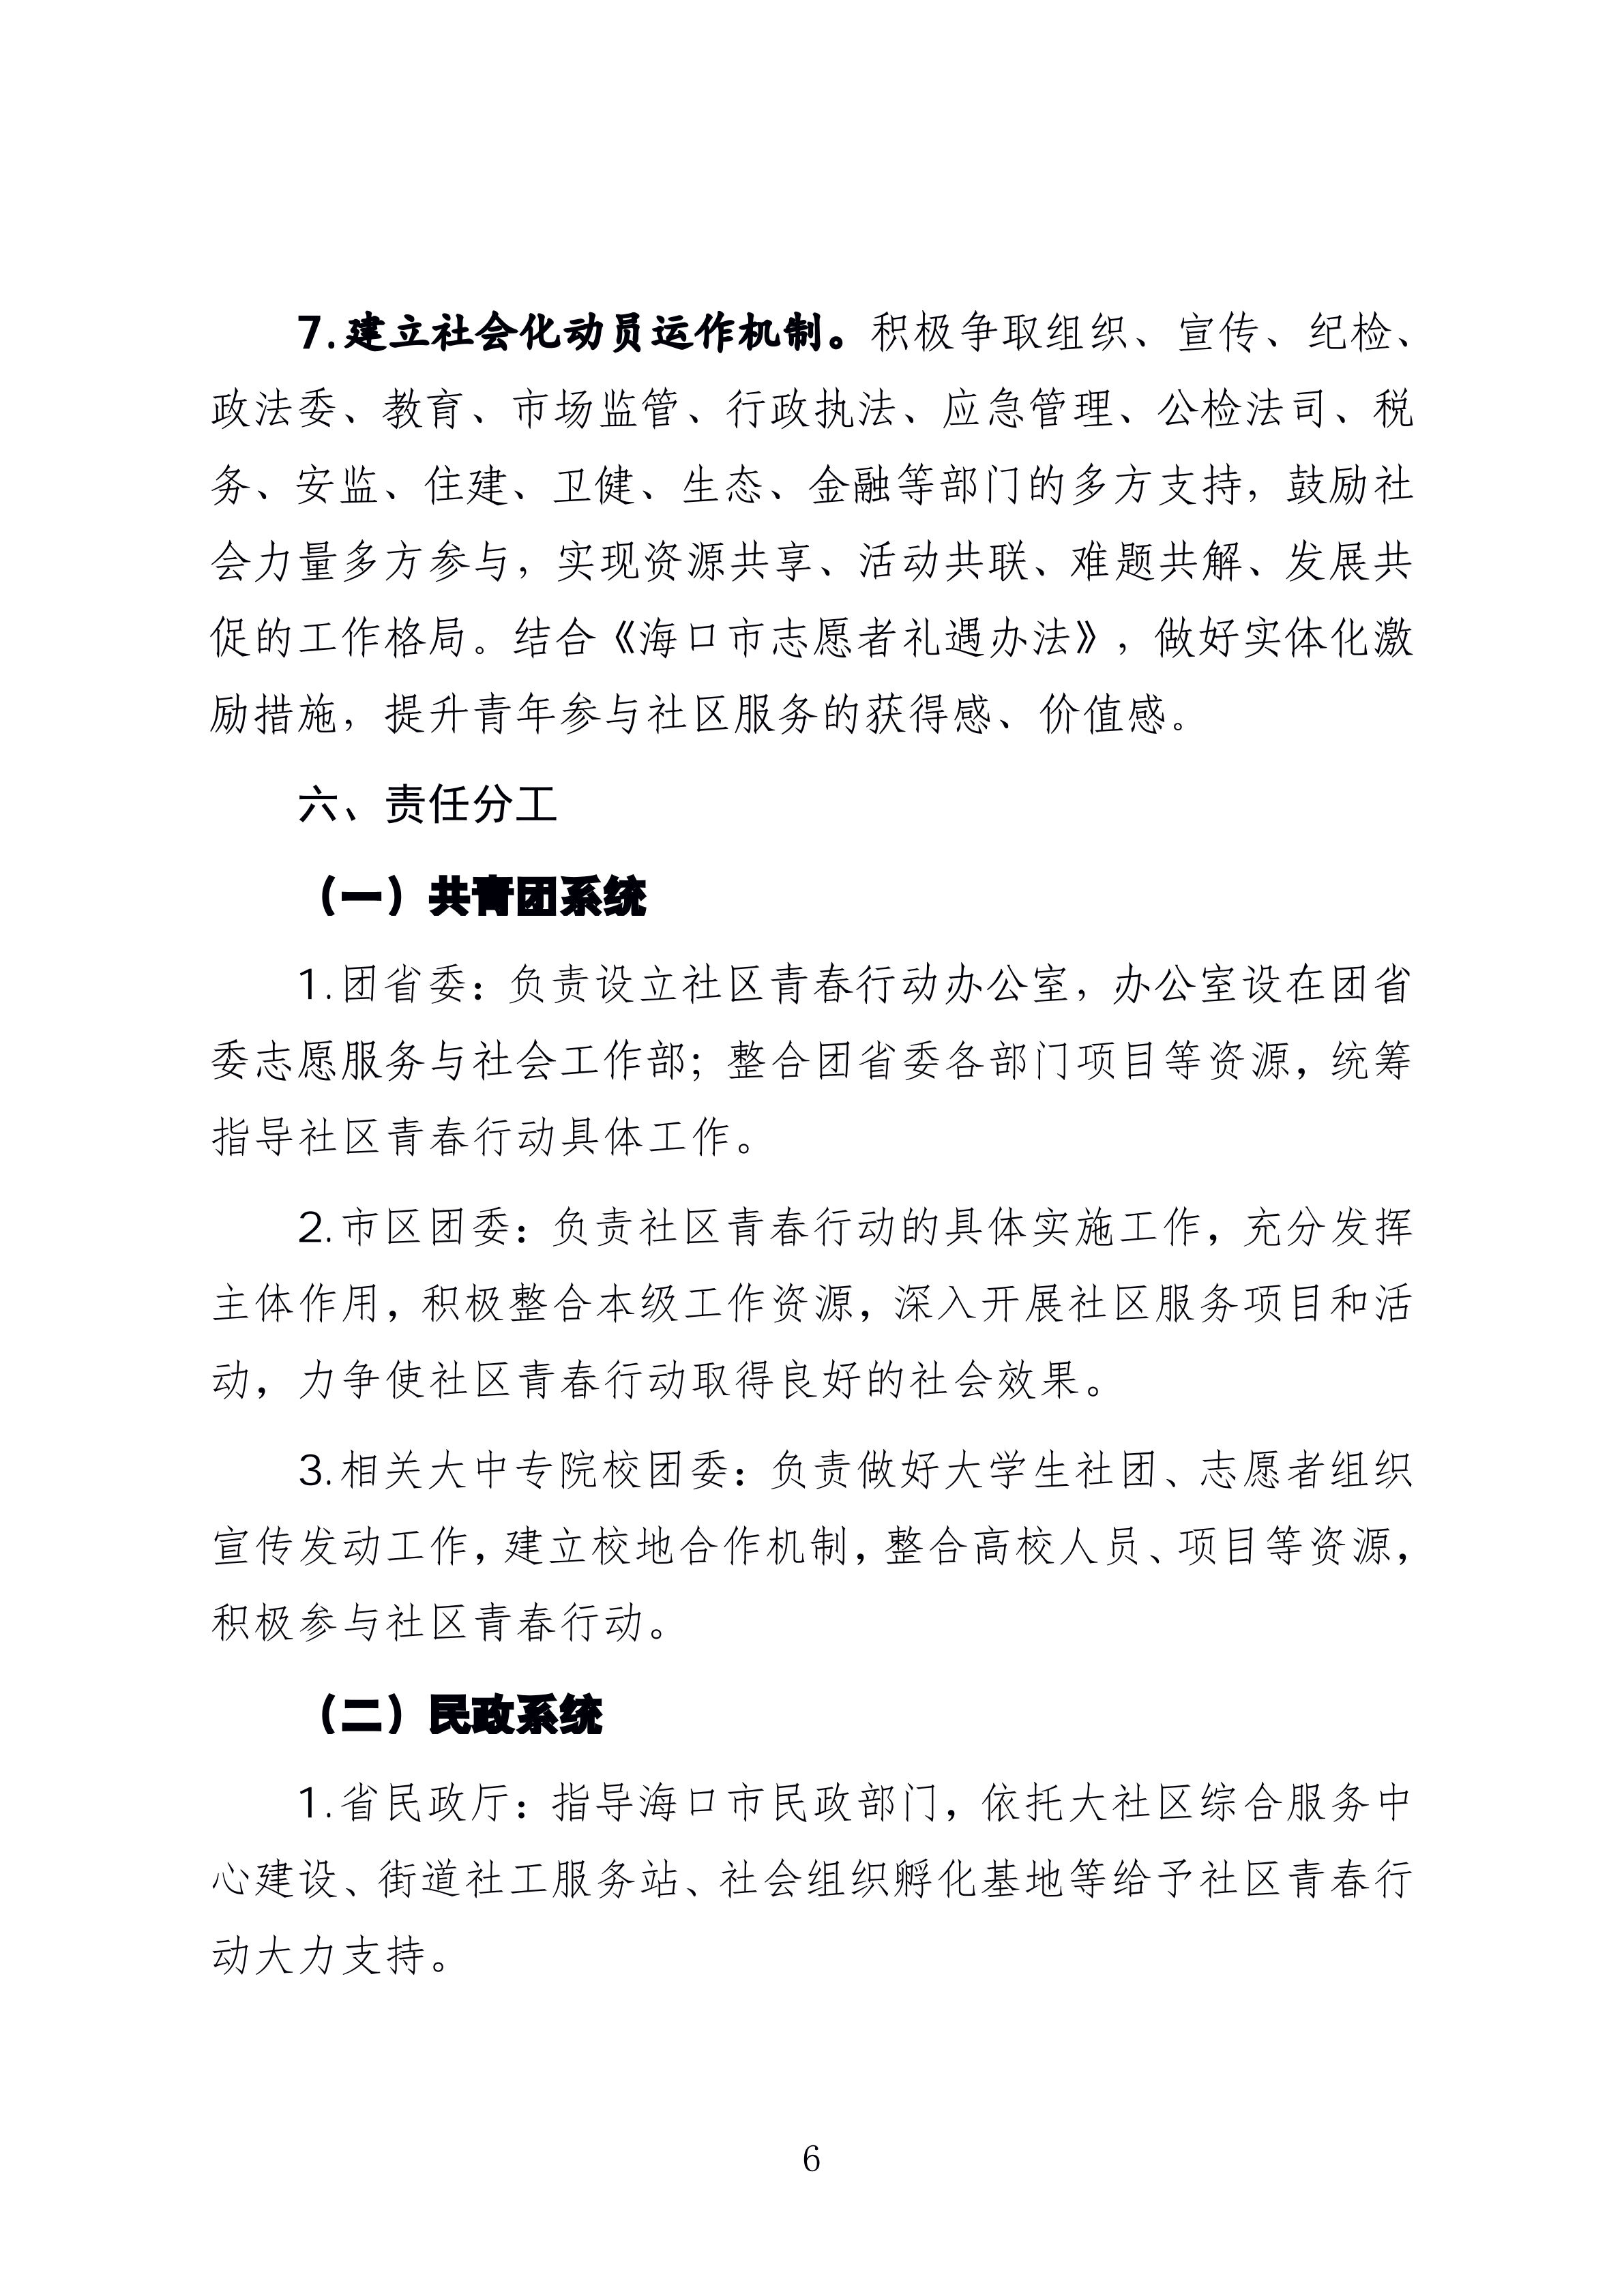 1-
  海南省民政厅 关于印发《海南省社区青春行动工作方案》 的通知_05.png